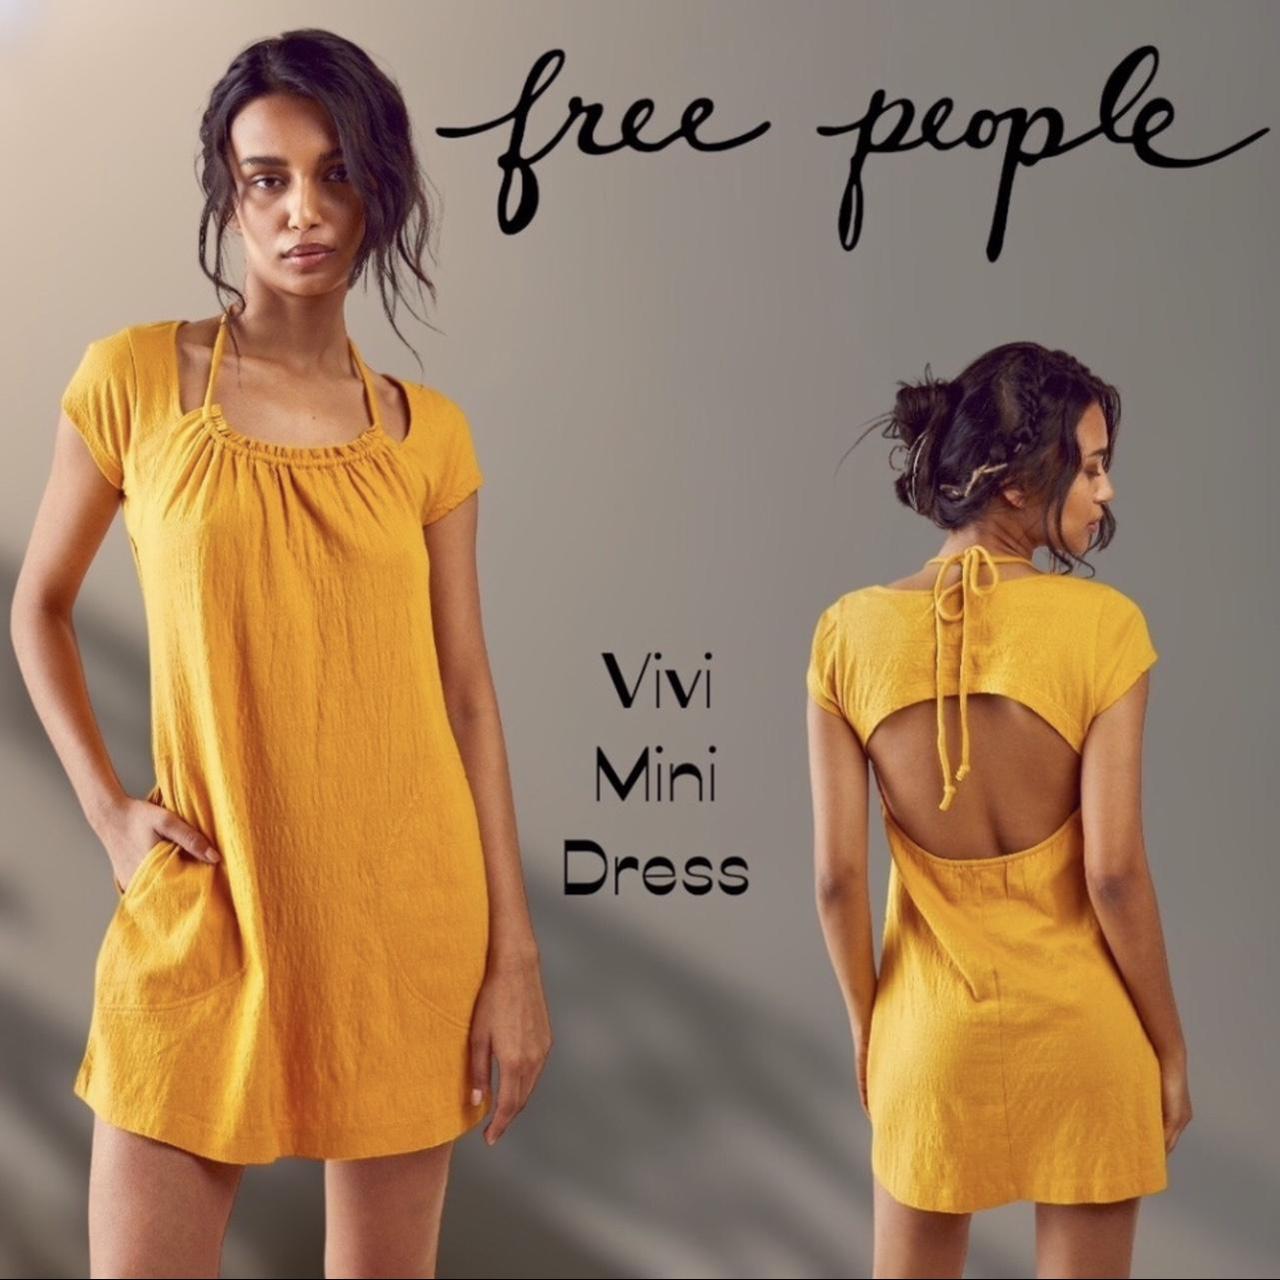 FREE PEOPLE Vivi Open Back Mini Dress in Golden... - Depop